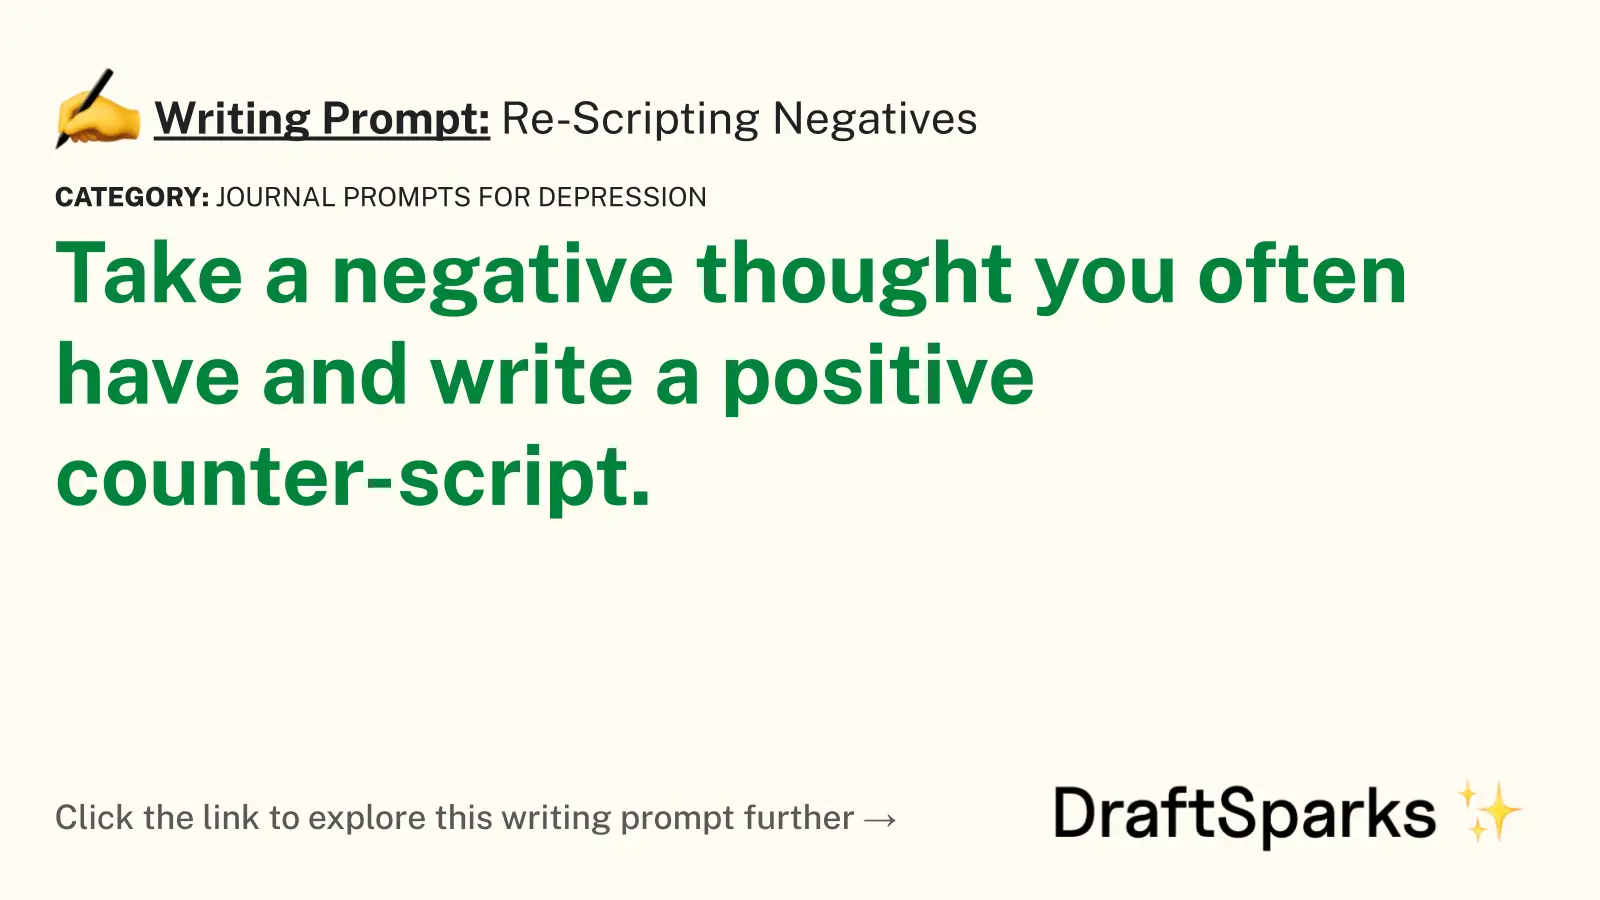 Re-Scripting Negatives